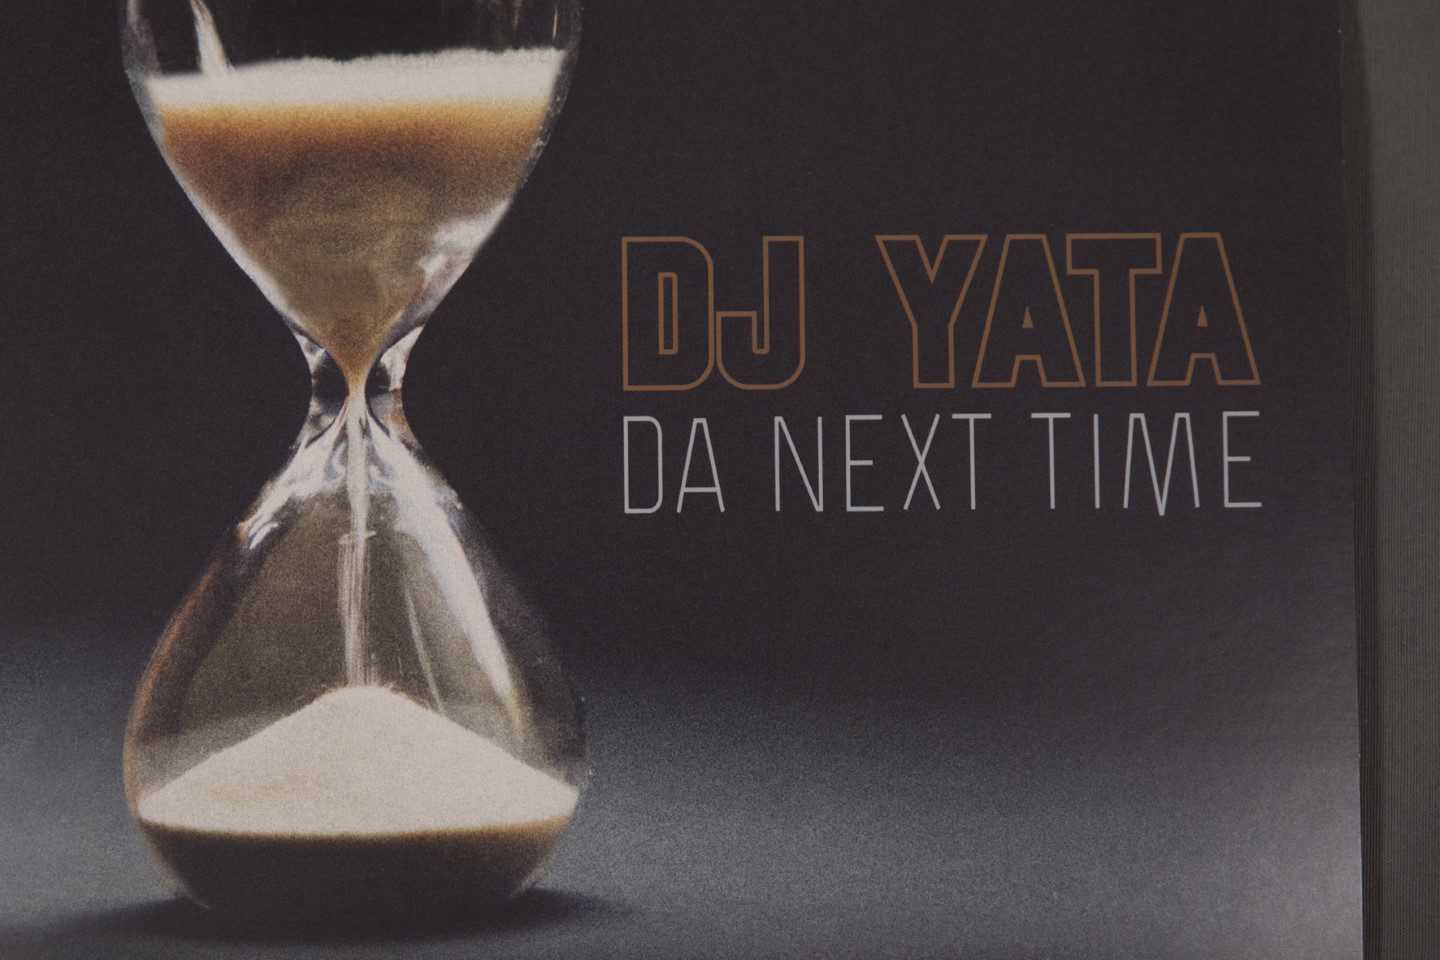 DJ YATA - "DA NEXT TIME" - Vinilo 12”